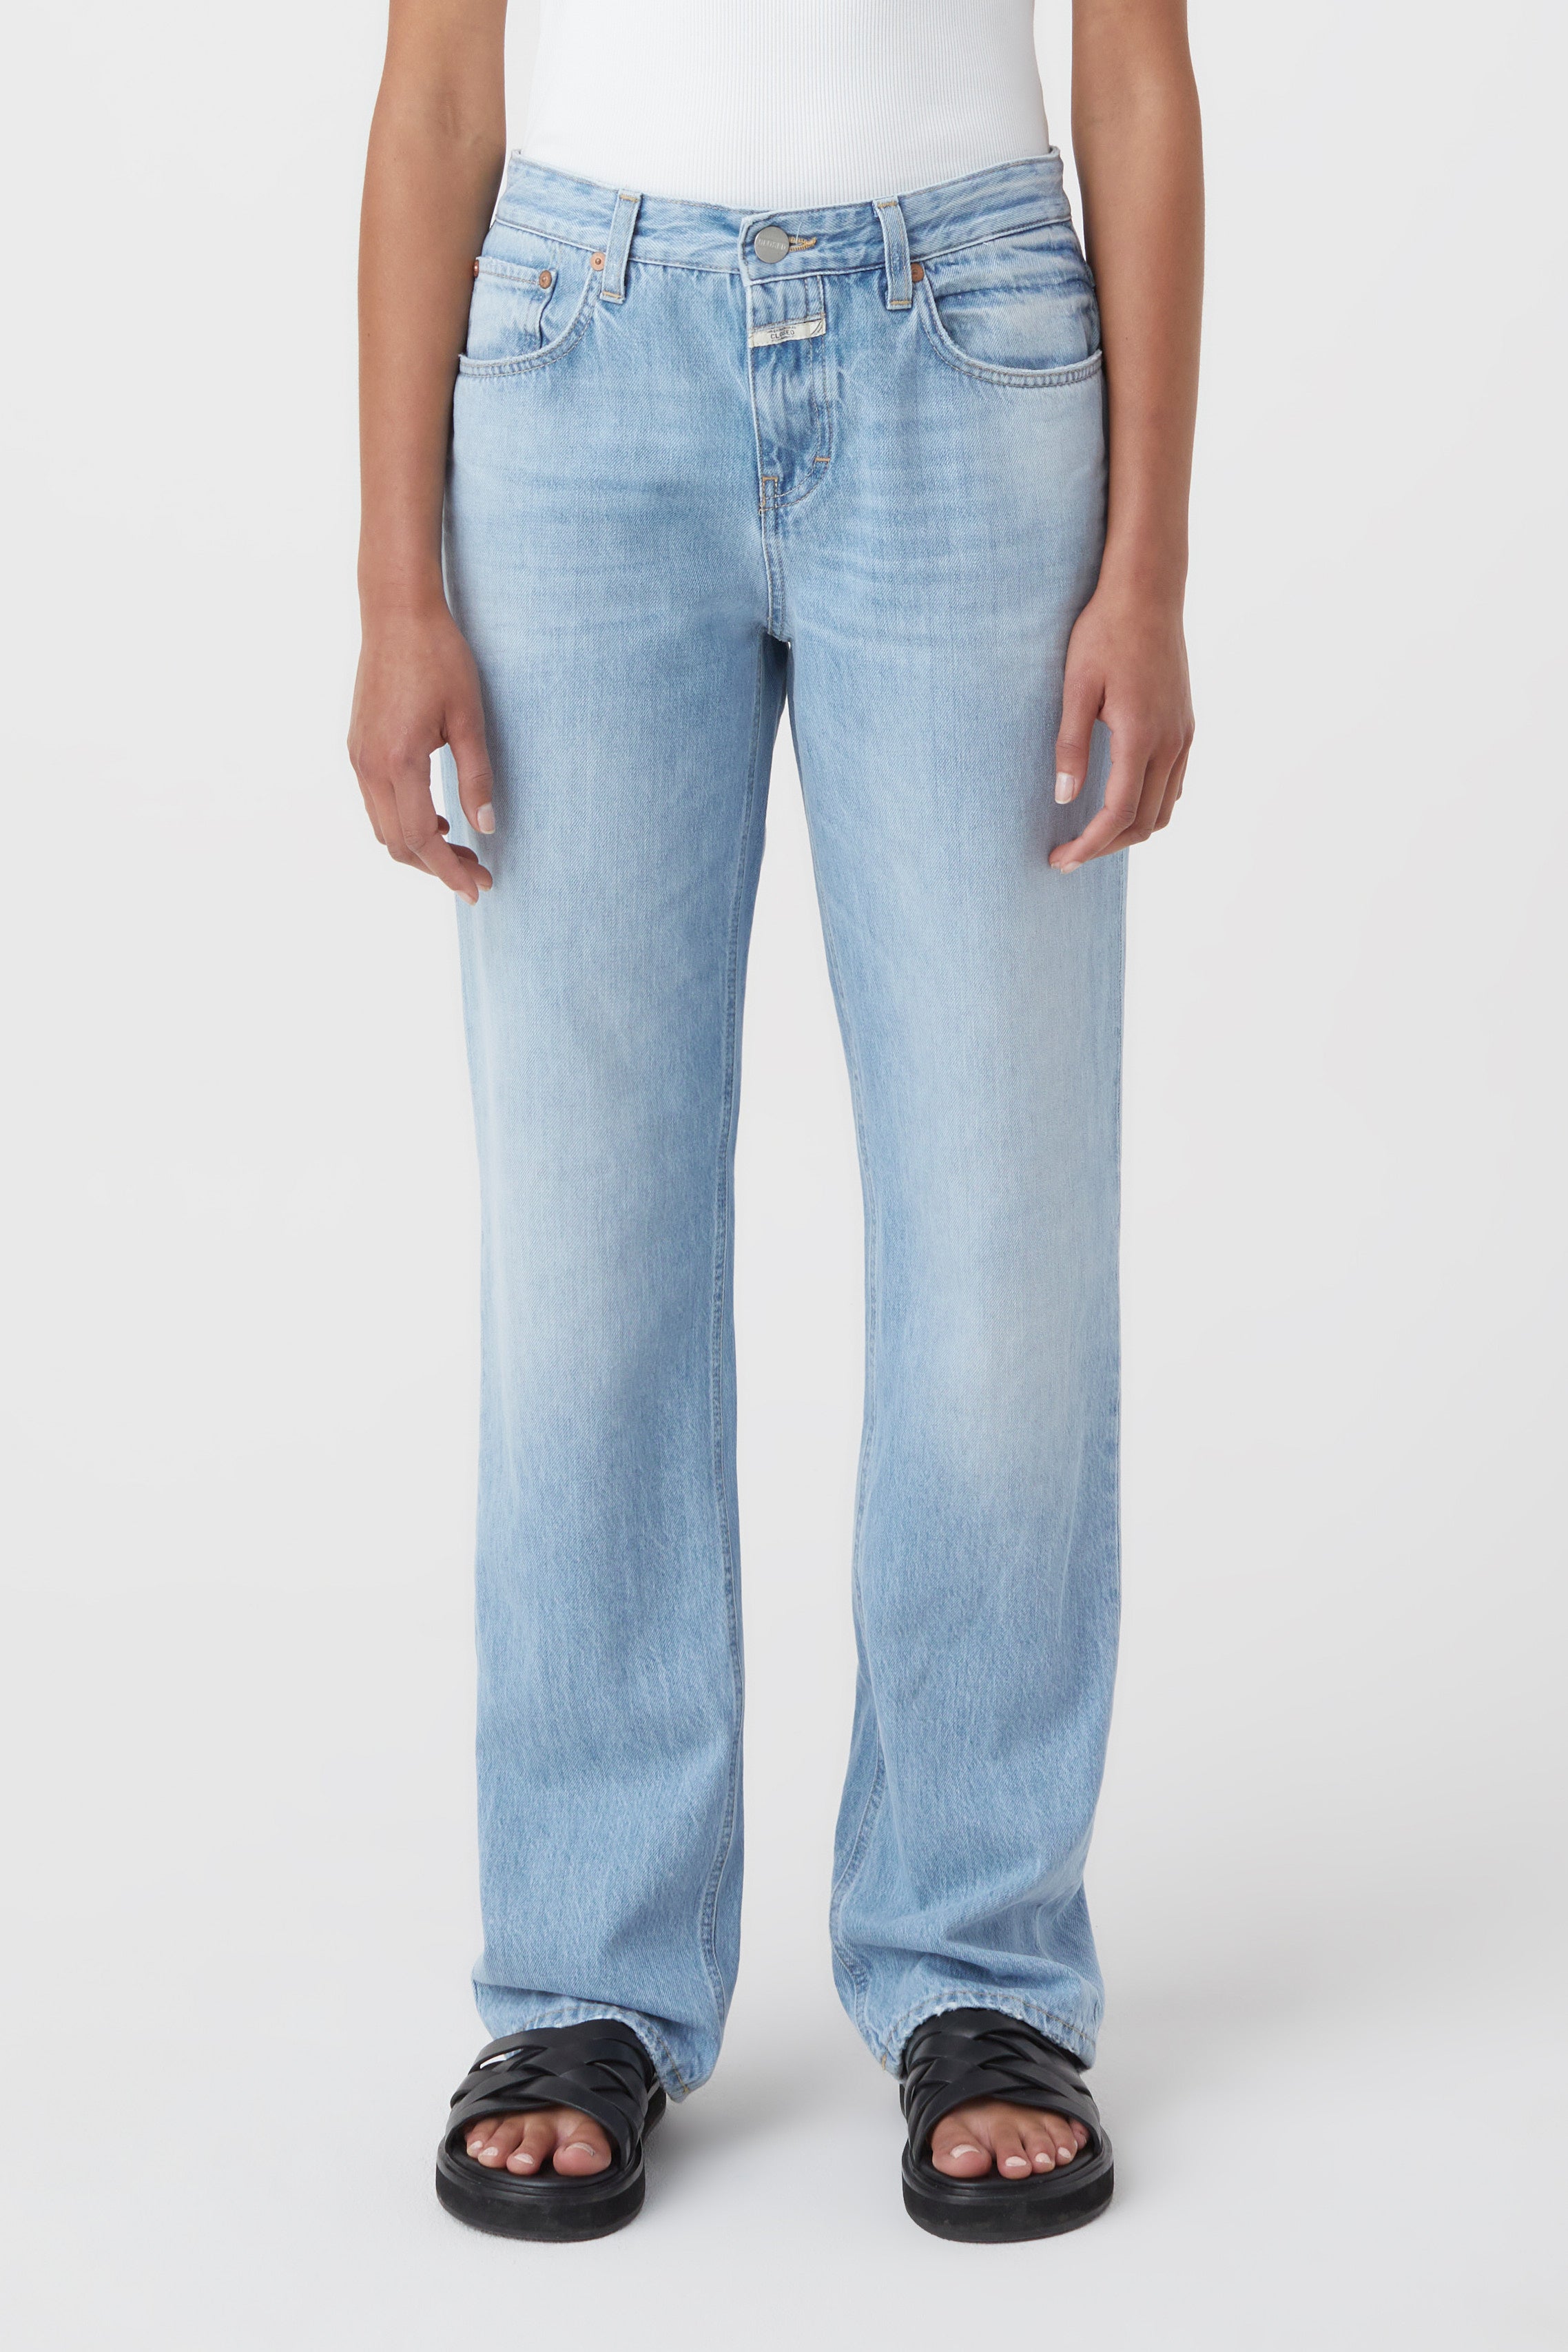 Jeans - Style Name BRISTON